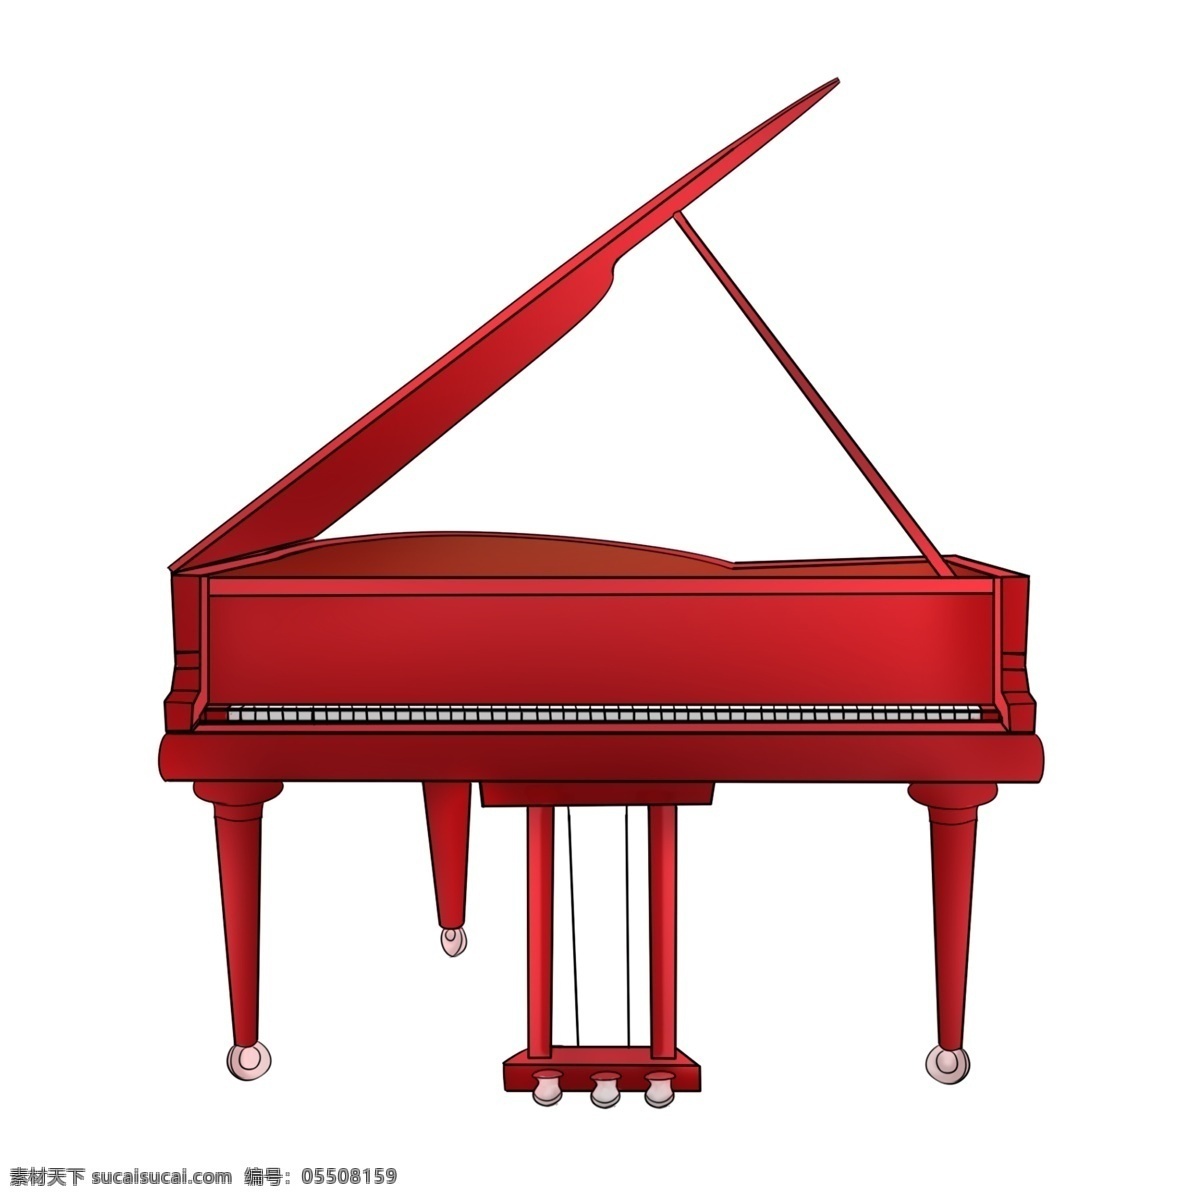 红色 钢琴 装饰 插画 红色的钢琴 乐器钢琴 漂亮的钢琴 创意钢琴 立体钢琴 精美钢琴 卡通钢琴